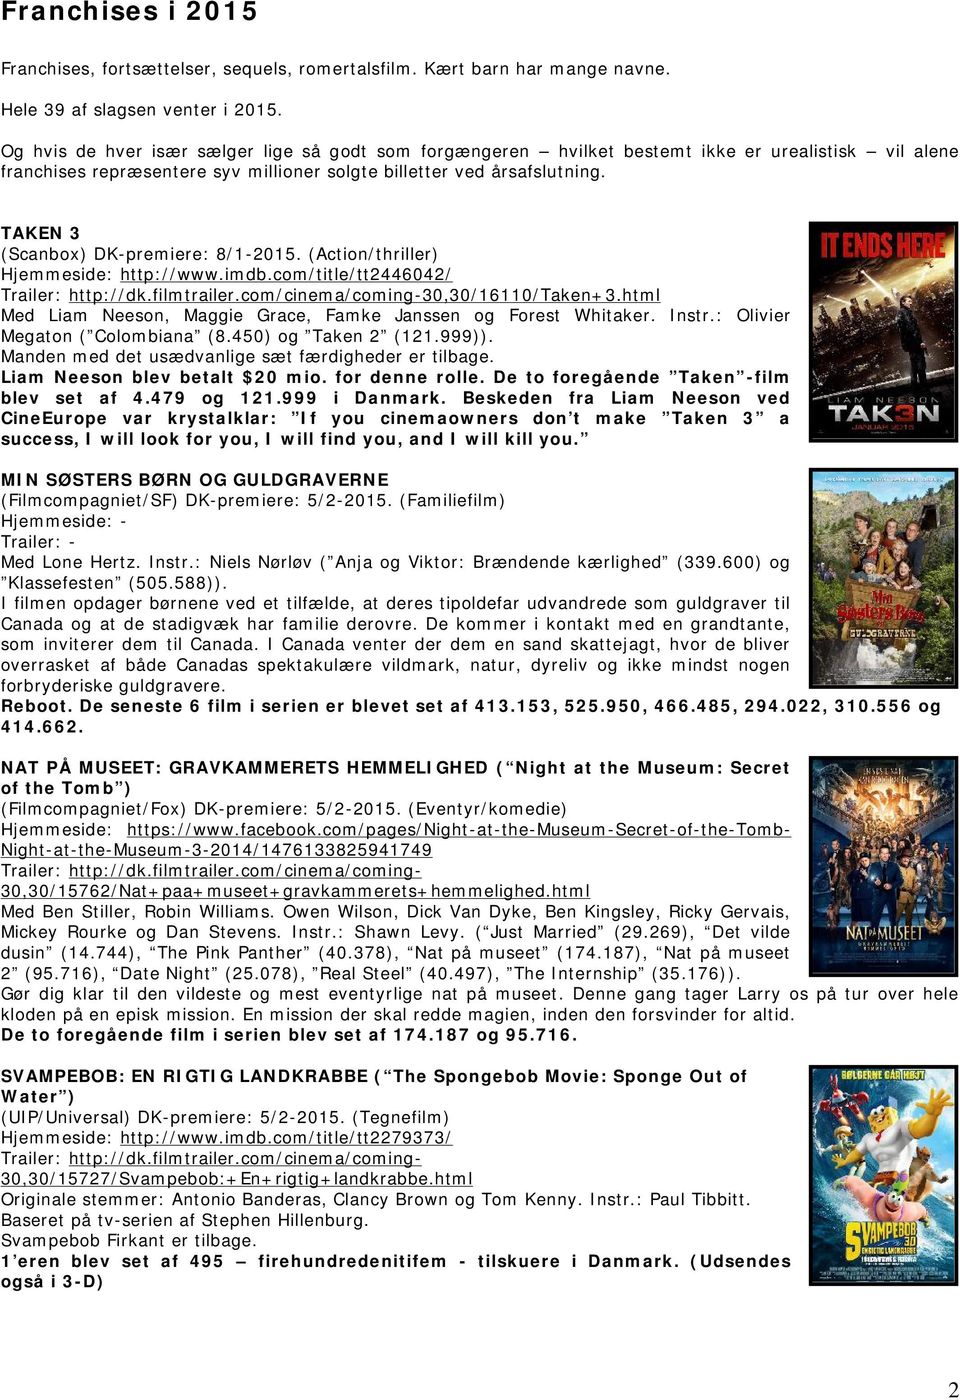 TAKEN 3 (Scanbox) DK-premiere: 8/1-2015. (Action/thriller) Hjemmeside: http://www.imdb.com/title/tt2446042/ Trailer: http://dk.filmtrailer.com/cinema/coming-30,30/16110/taken+3.